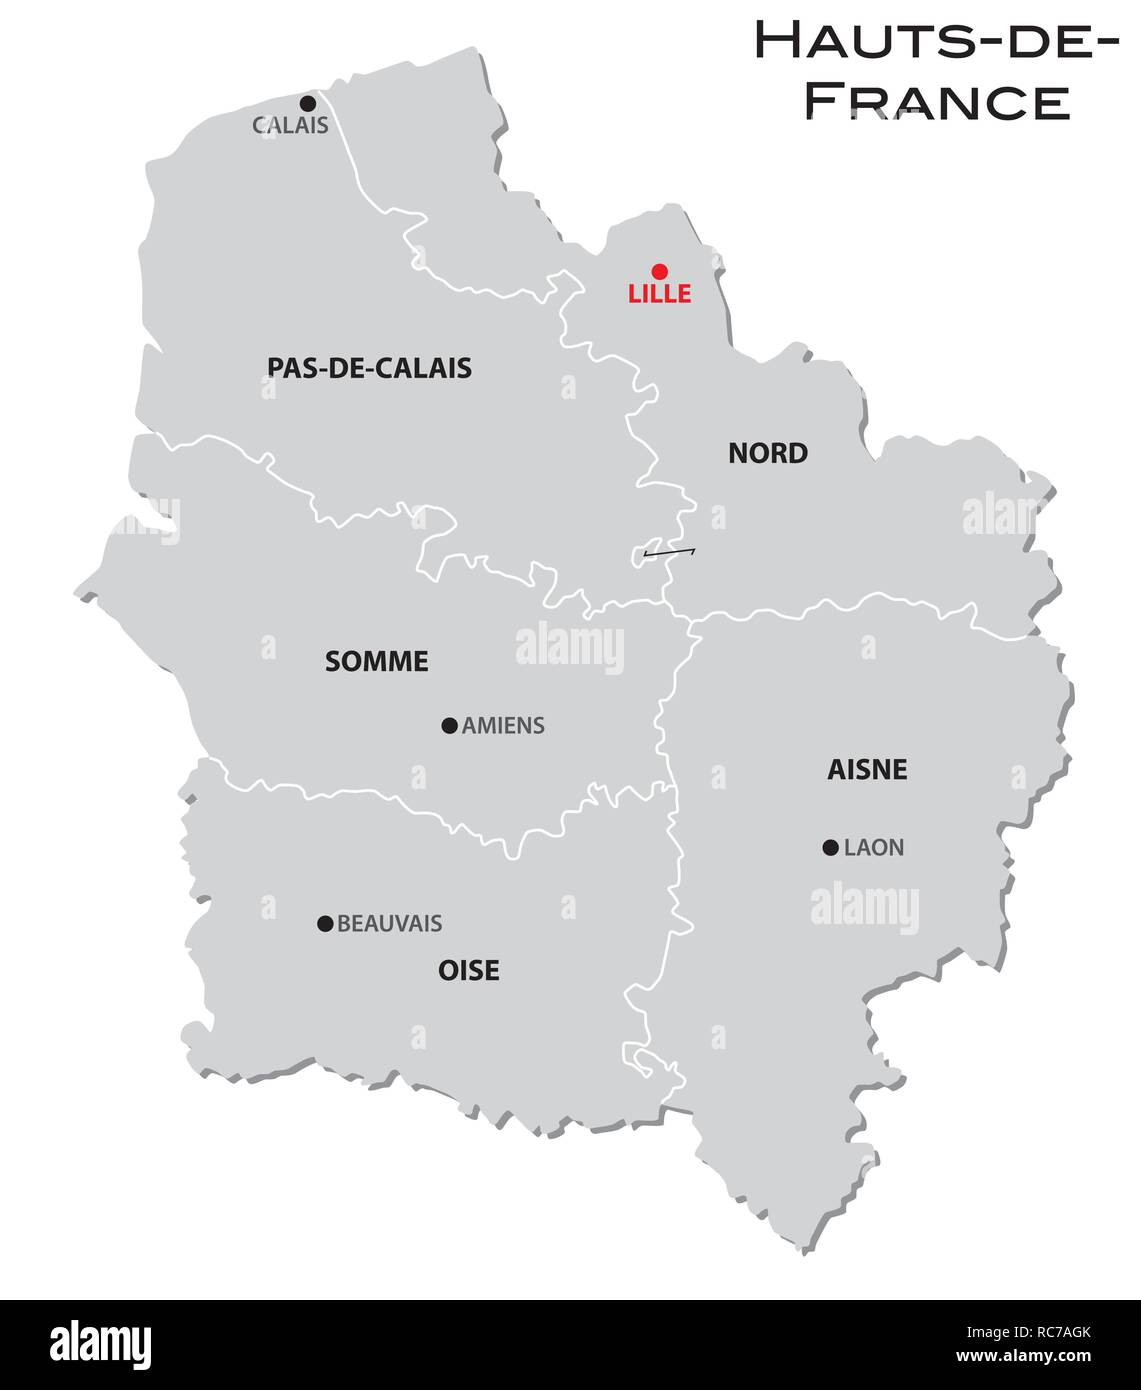 Grigio semplice mappa amministrativa della nuova regione francese Hauts-de- France Immagine e Vettoriale - Alamy